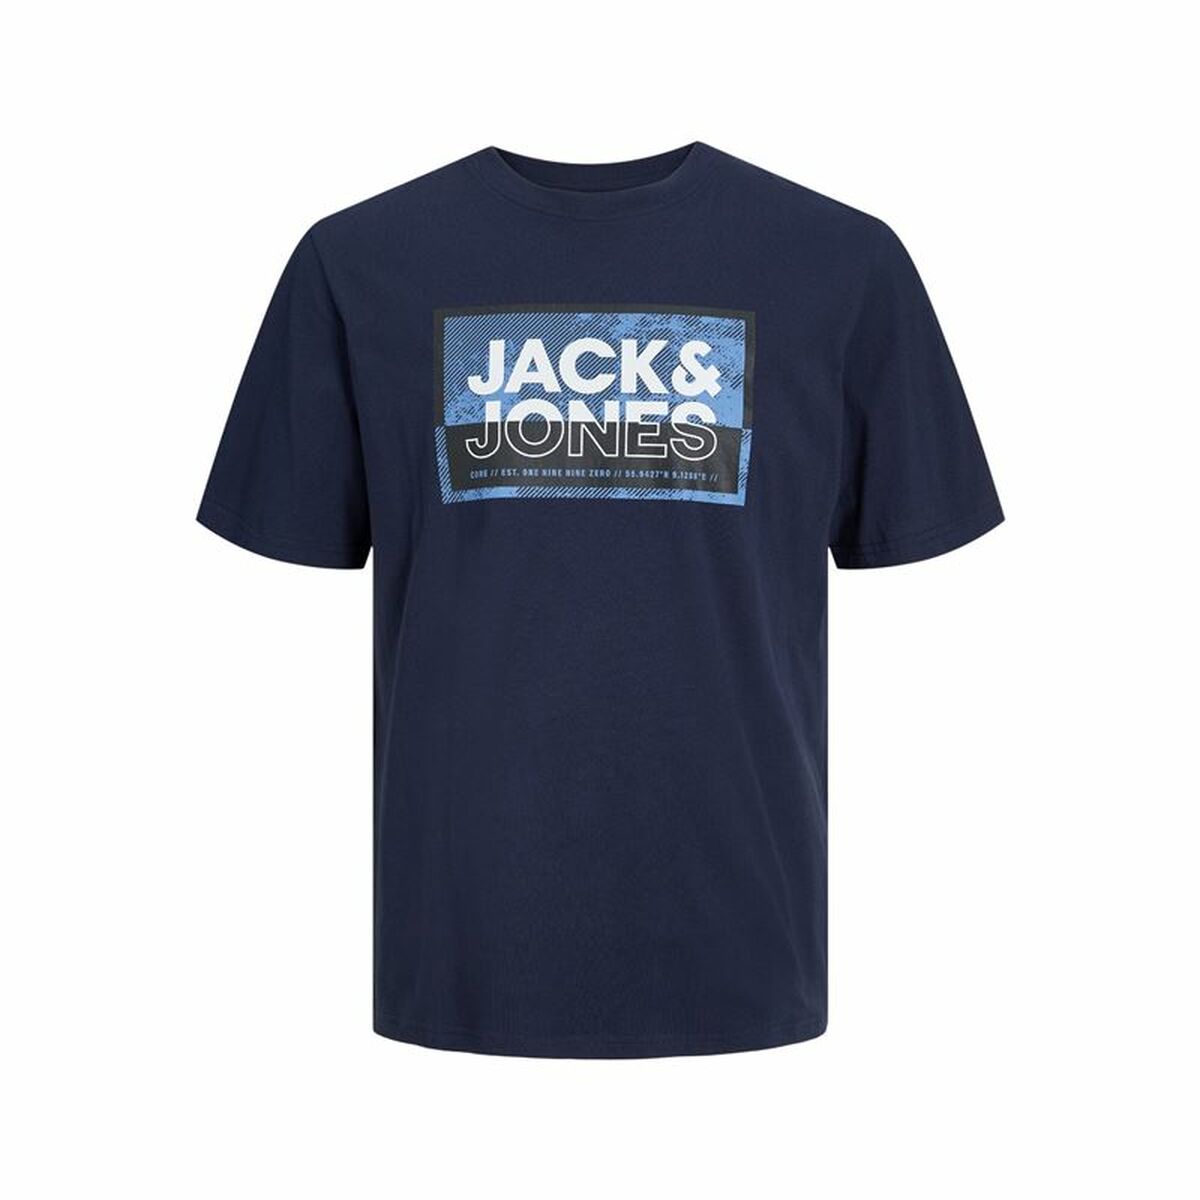 T-shirt à manches courtes homme Jack & Jones logan Bleu Homme